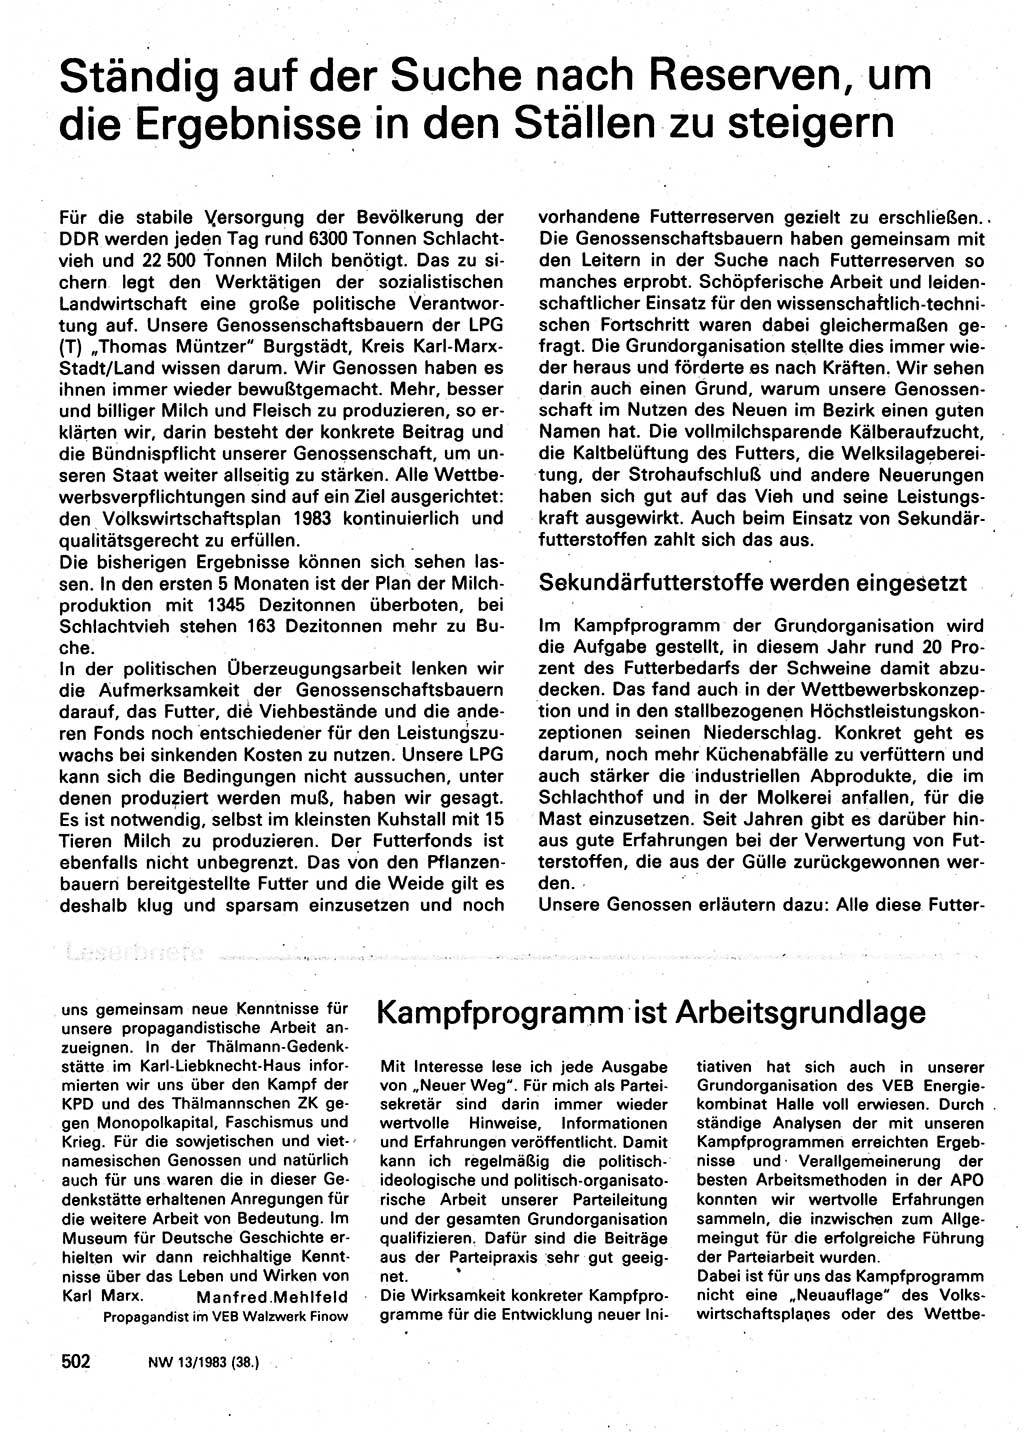 Neuer Weg (NW), Organ des Zentralkomitees (ZK) der SED (Sozialistische Einheitspartei Deutschlands) für Fragen des Parteilebens, 38. Jahrgang [Deutsche Demokratische Republik (DDR)] 1983, Seite 502 (NW ZK SED DDR 1983, S. 502)